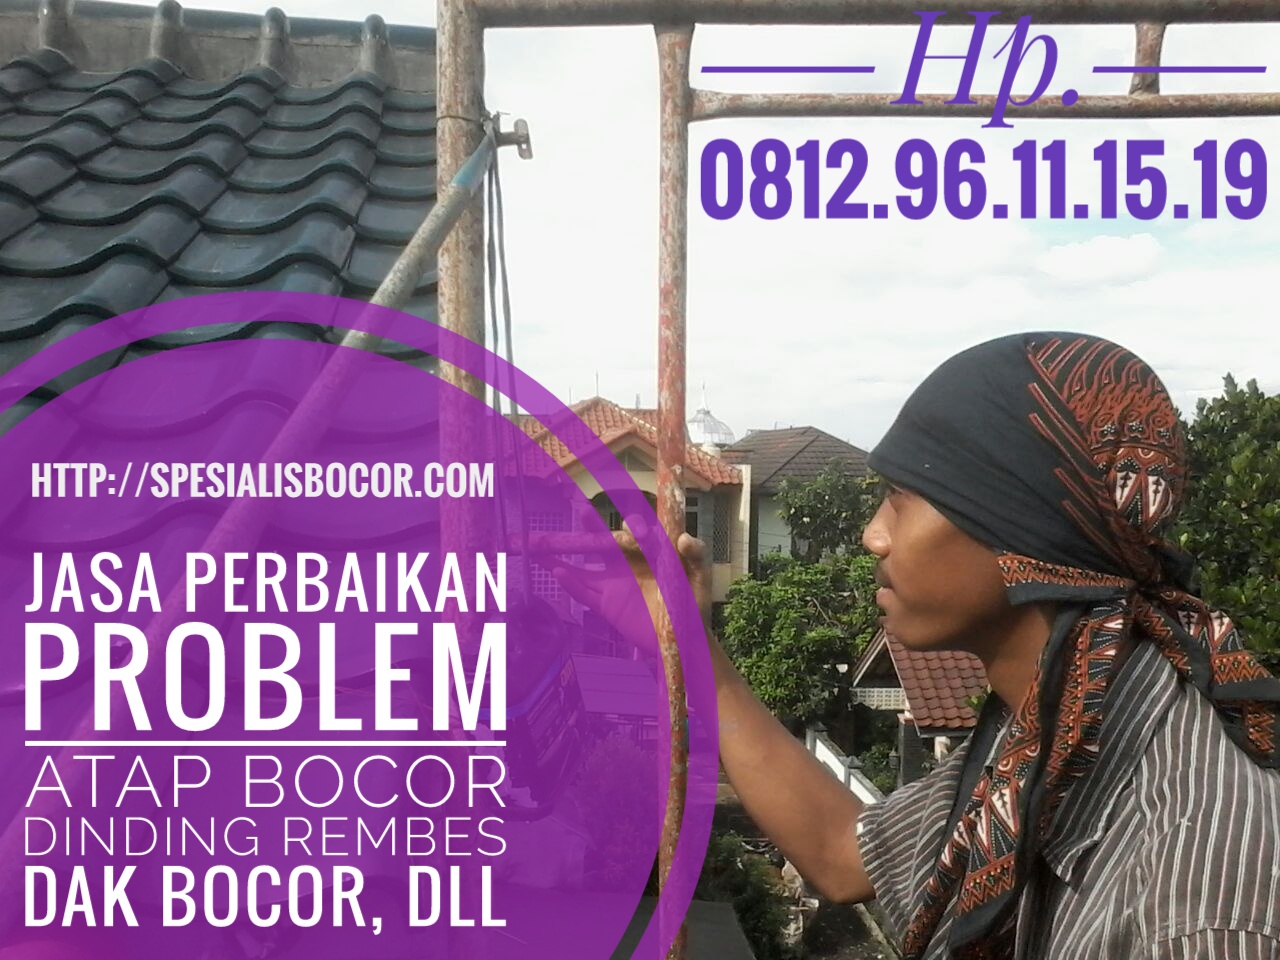 Jasa Perbaikan Problem Atap Bocor Dinding Rembes 